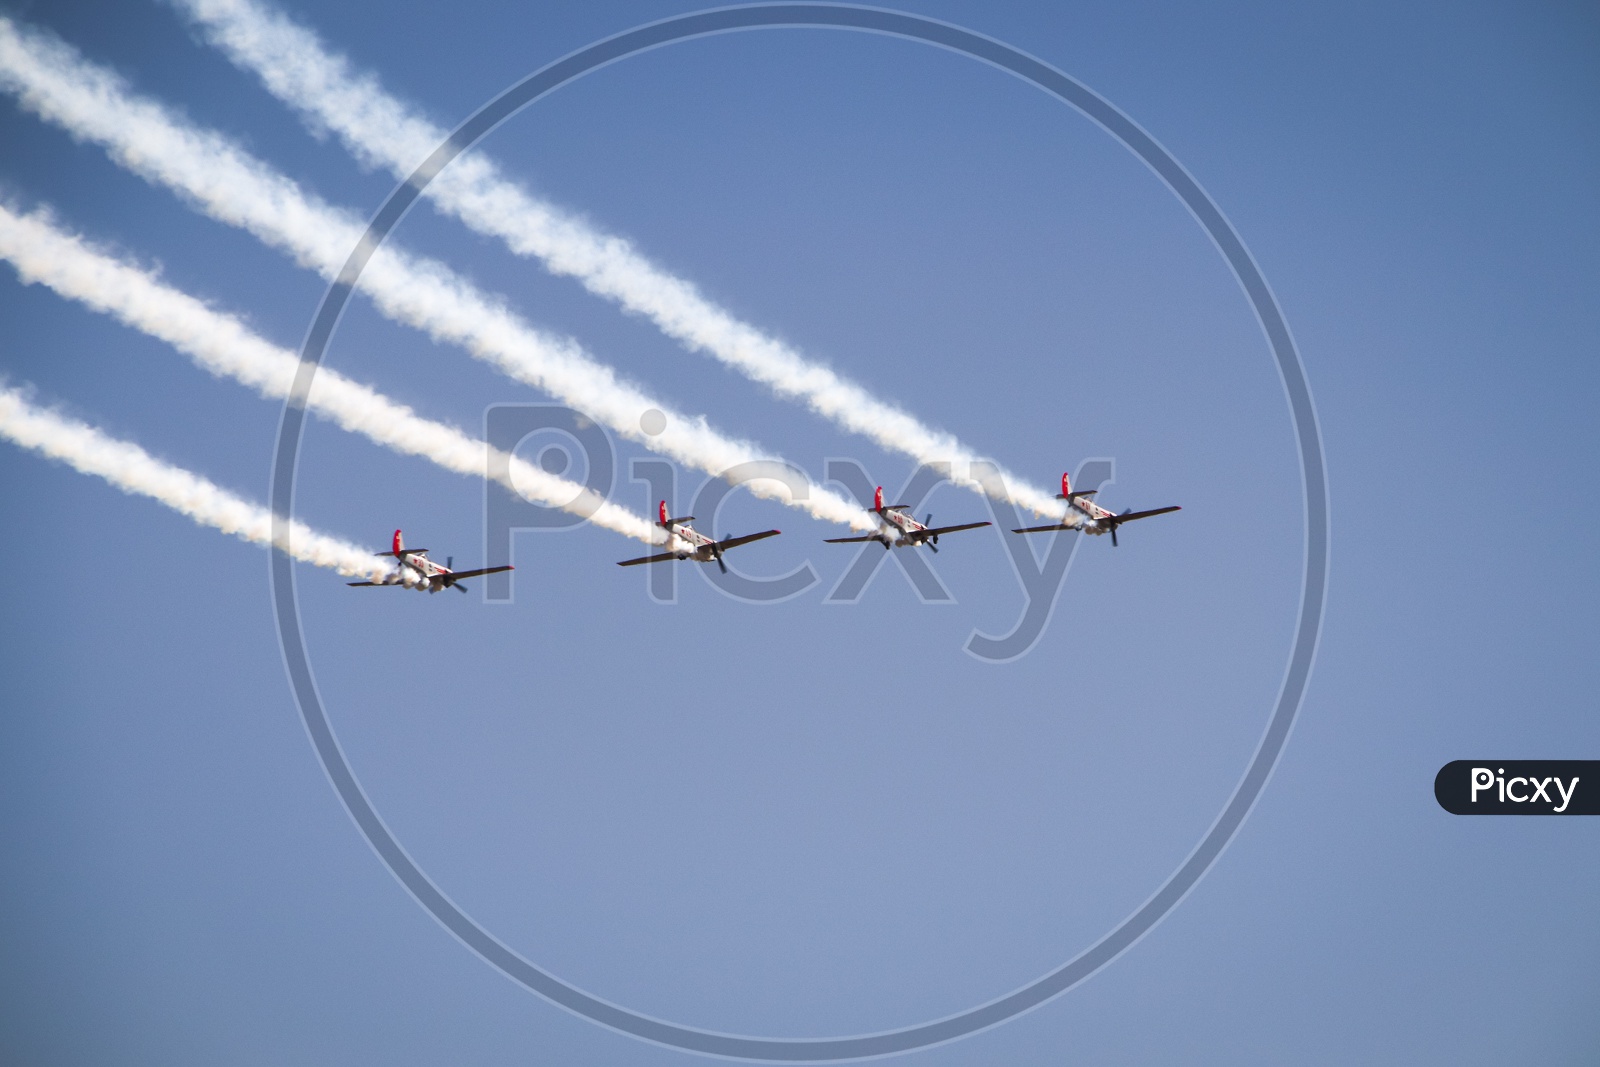 Yak Aerobatic Team